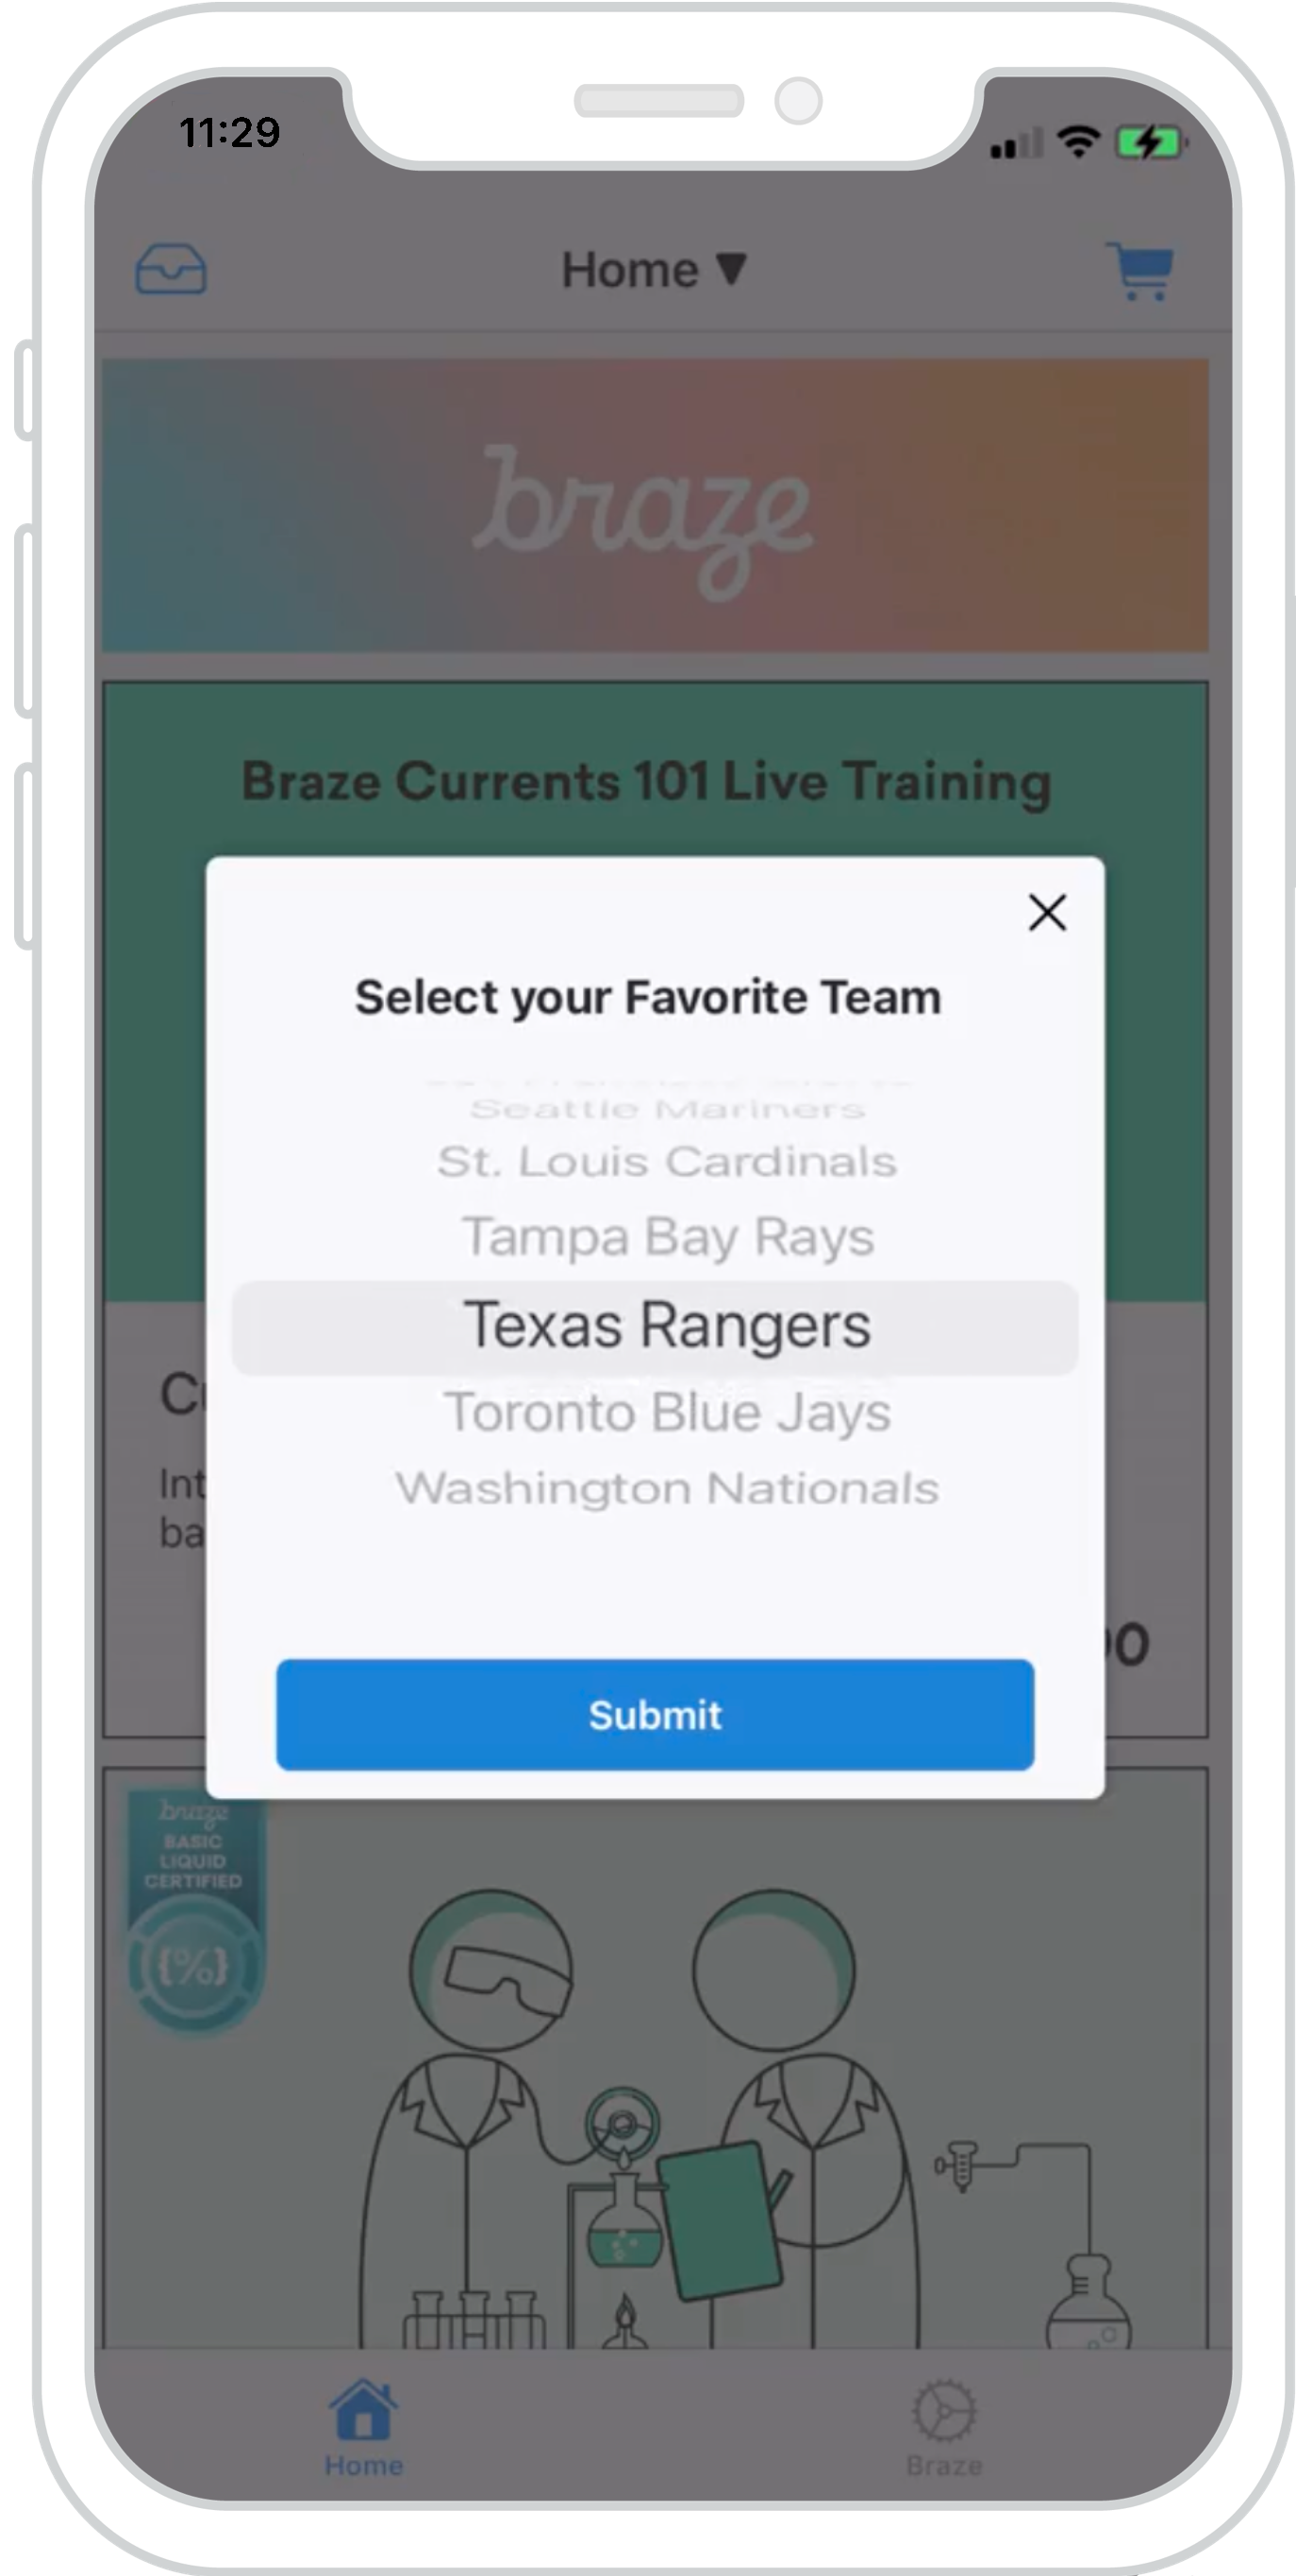 iPhone にモーダルアプリ内メッセージが表示されるので、スポーツチームのリストを順番に表示してお気に入りのチームを選択できます。このアプリ内メッセージの下部には、大きな青い送信ボタンがあります。